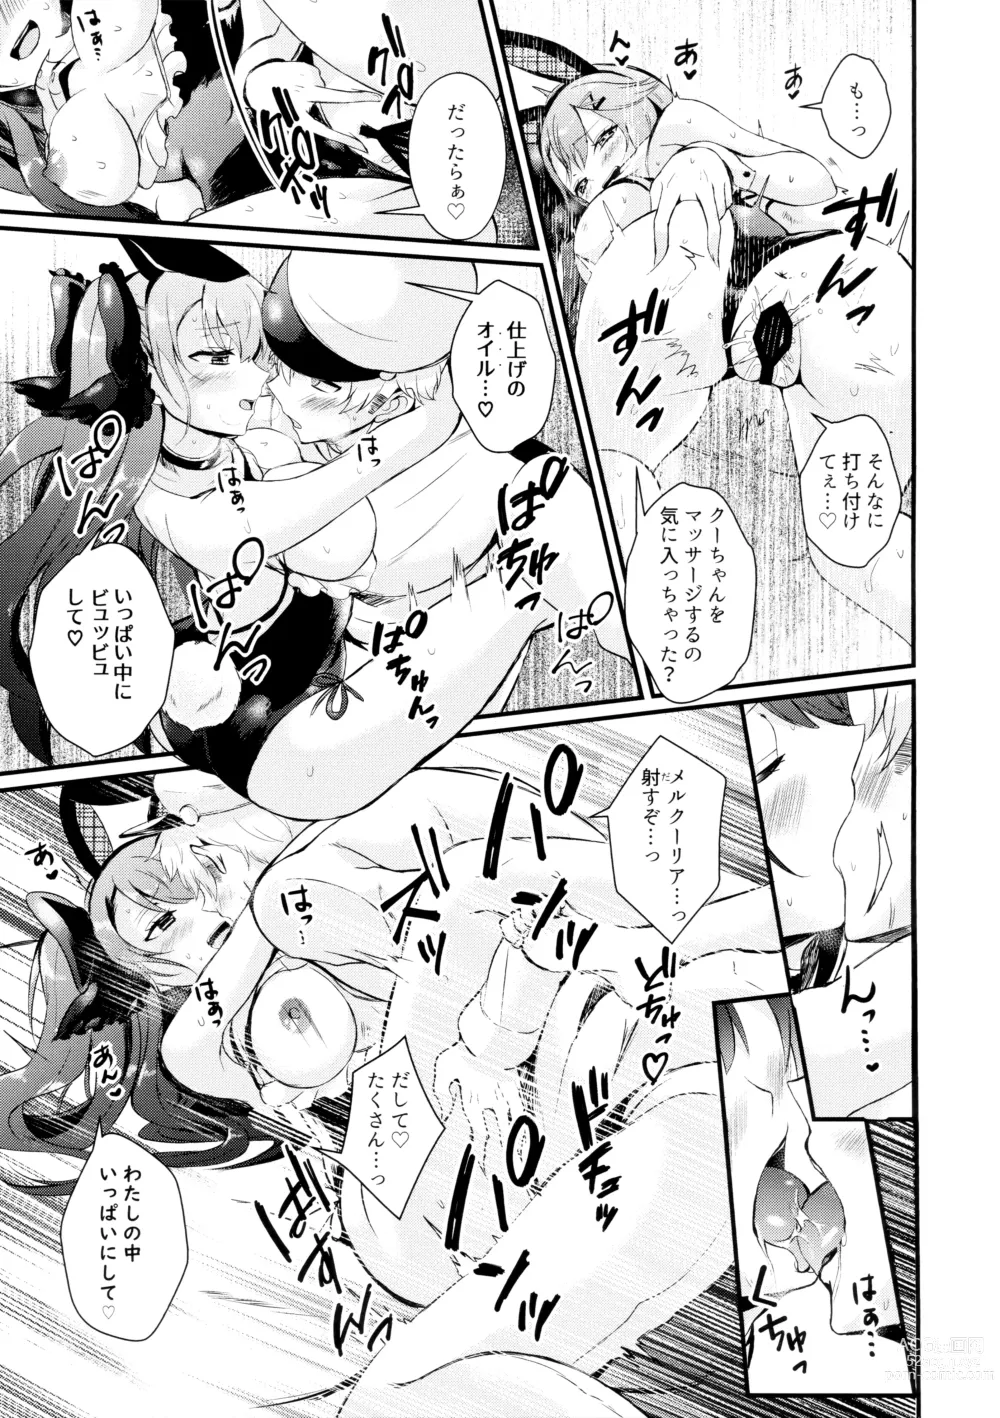 Page 21 of doujinshi Koakuma Rabbit